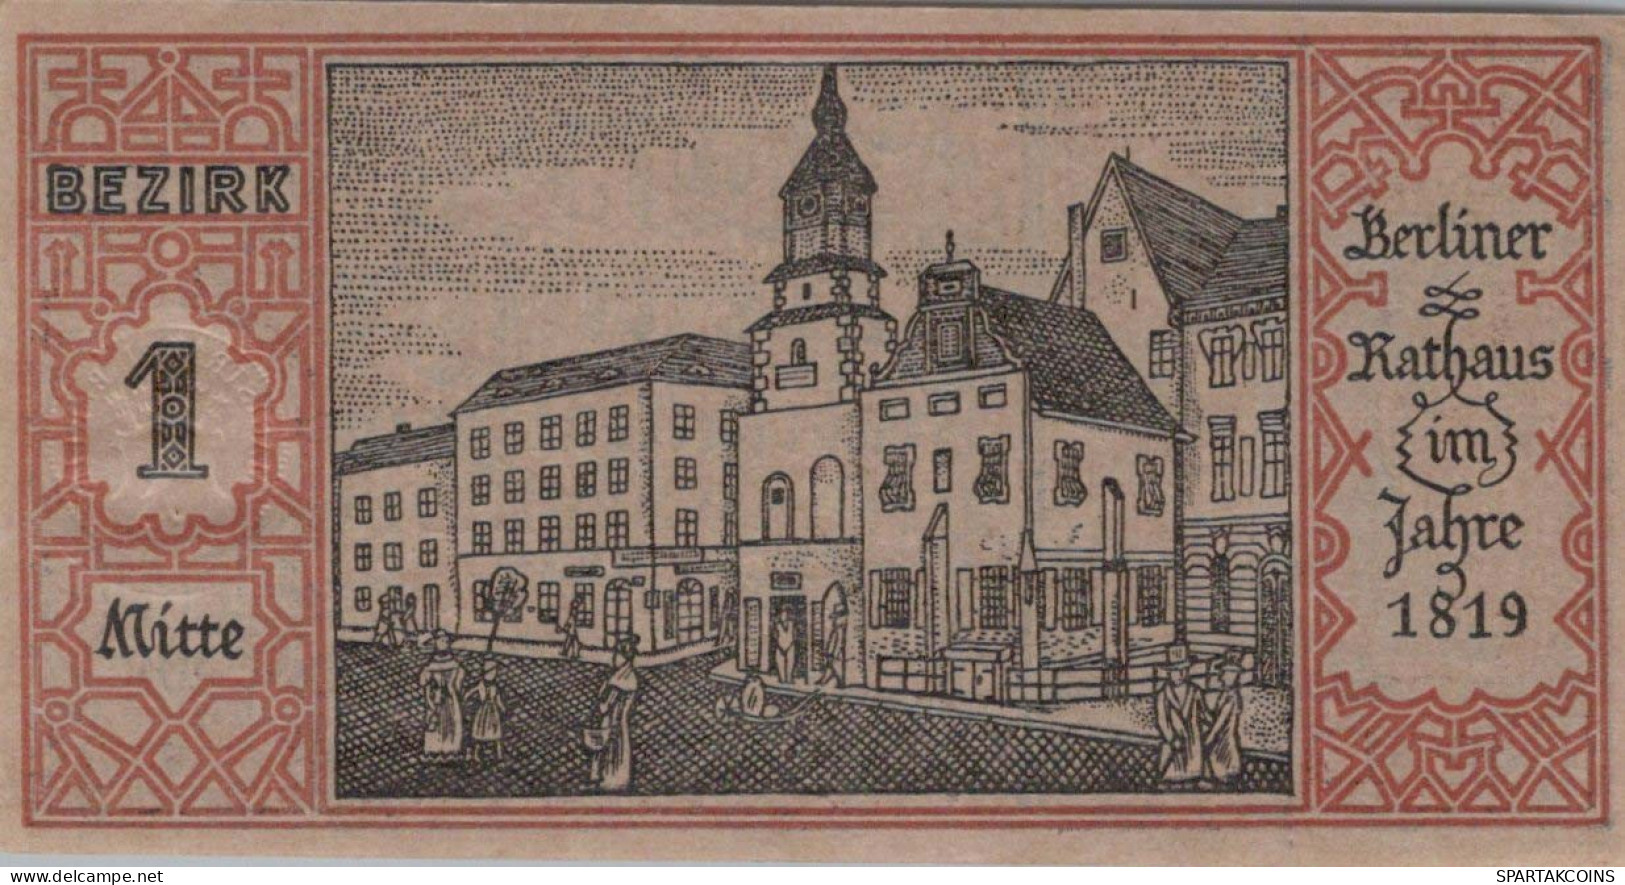 50 PFENNIG 1921 Stadt BERLIN UNC DEUTSCHLAND Notgeld Banknote #PA177 - Lokale Ausgaben